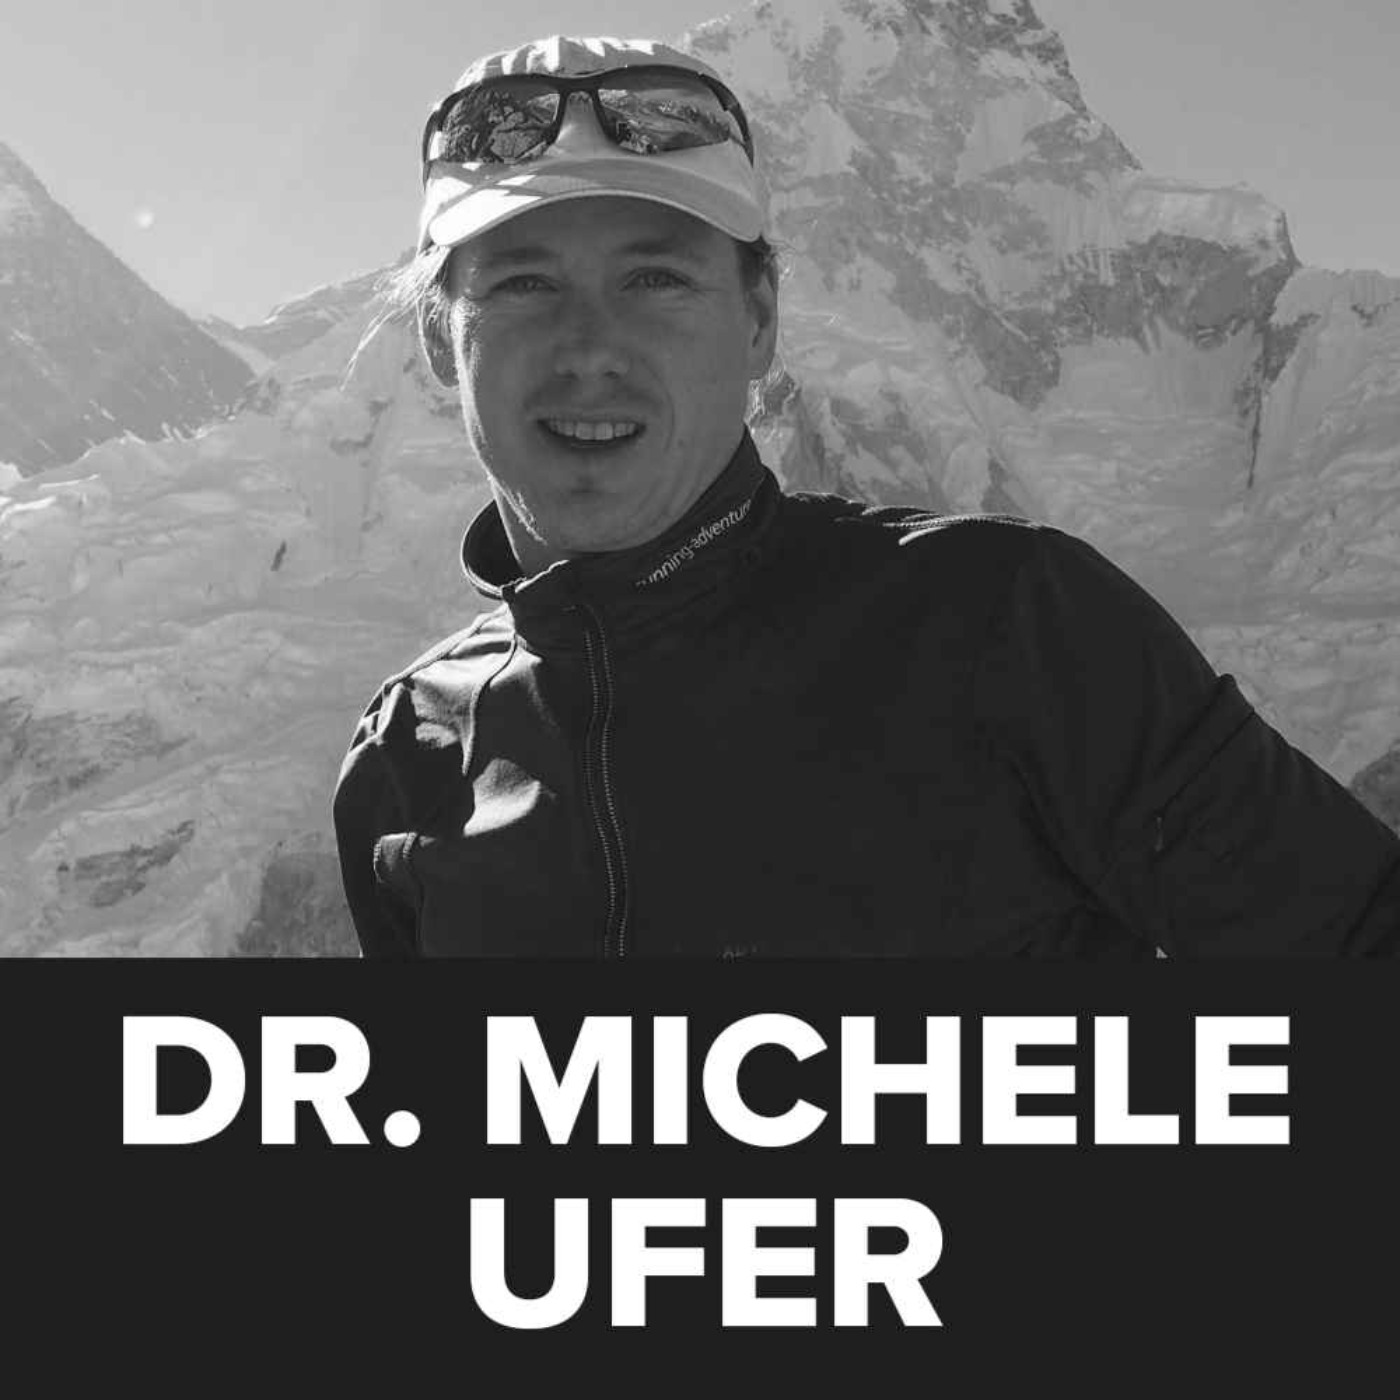 Dr Michele Ufer - Motivation and Goals